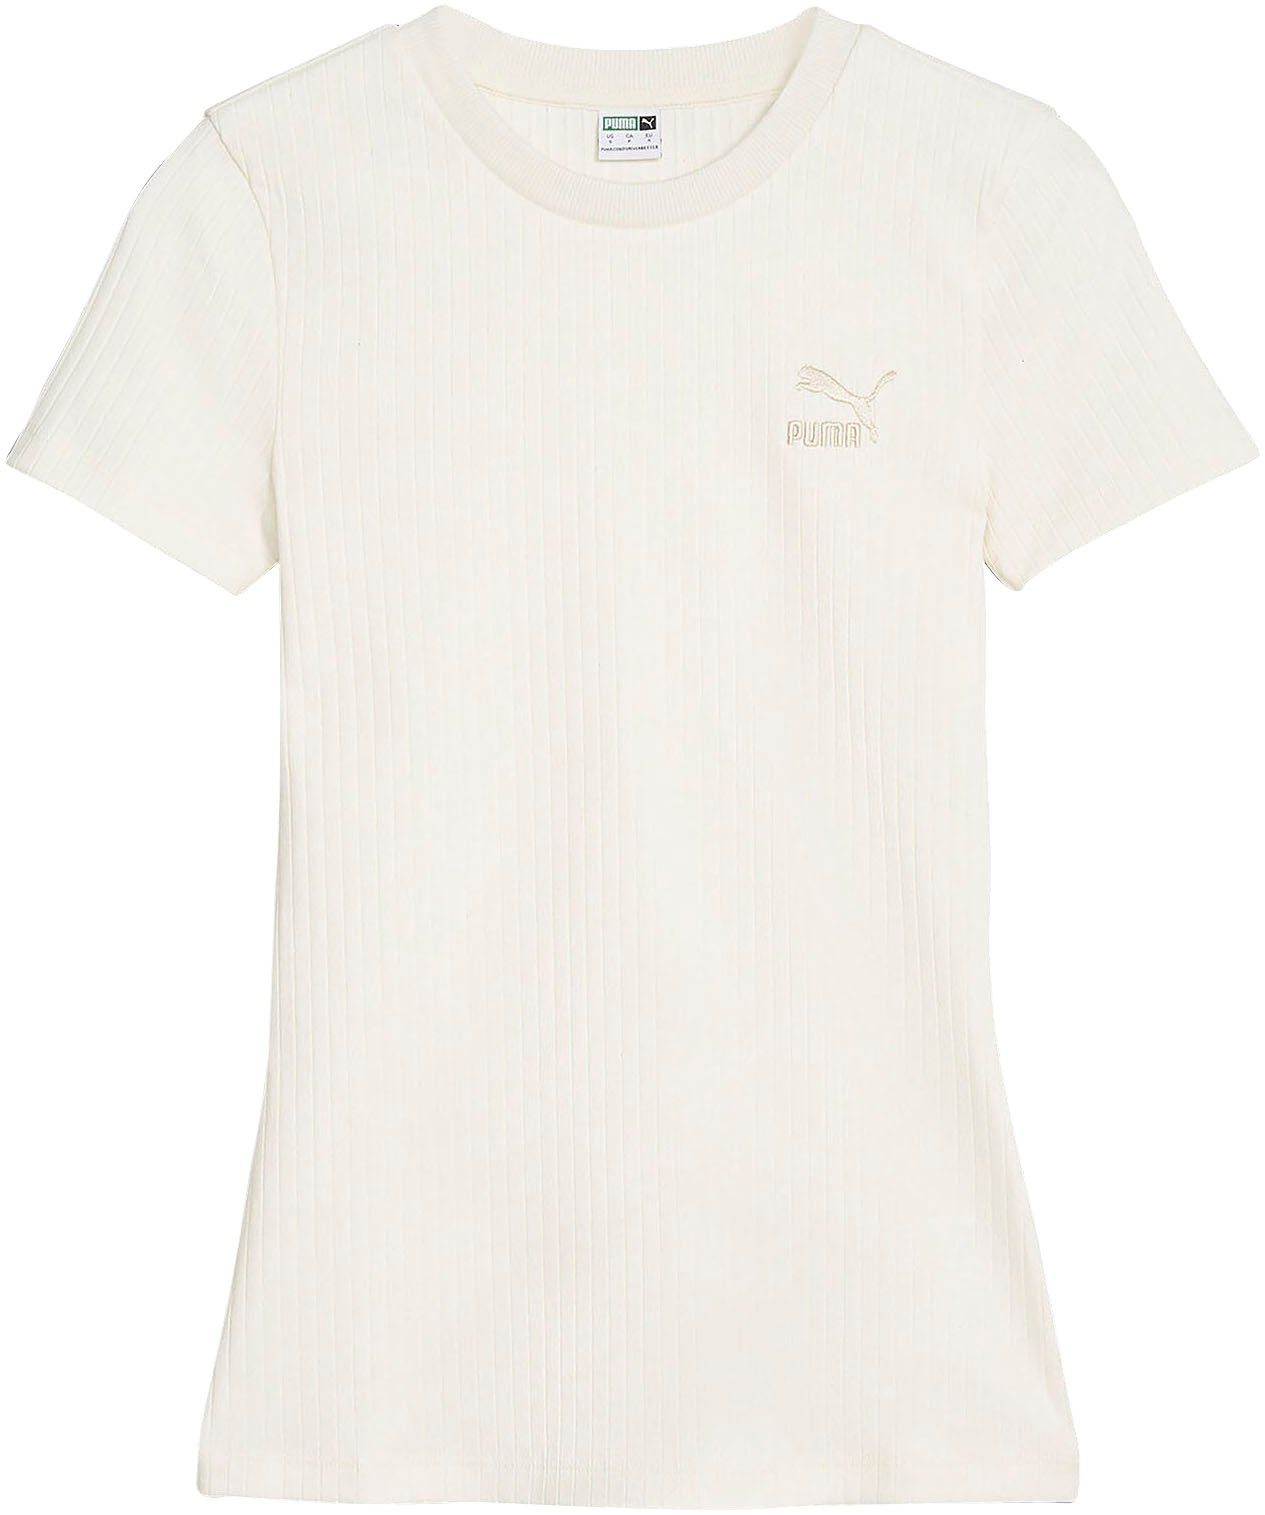 Weiße PUMA Damen T-Shirts online kaufen | OTTO